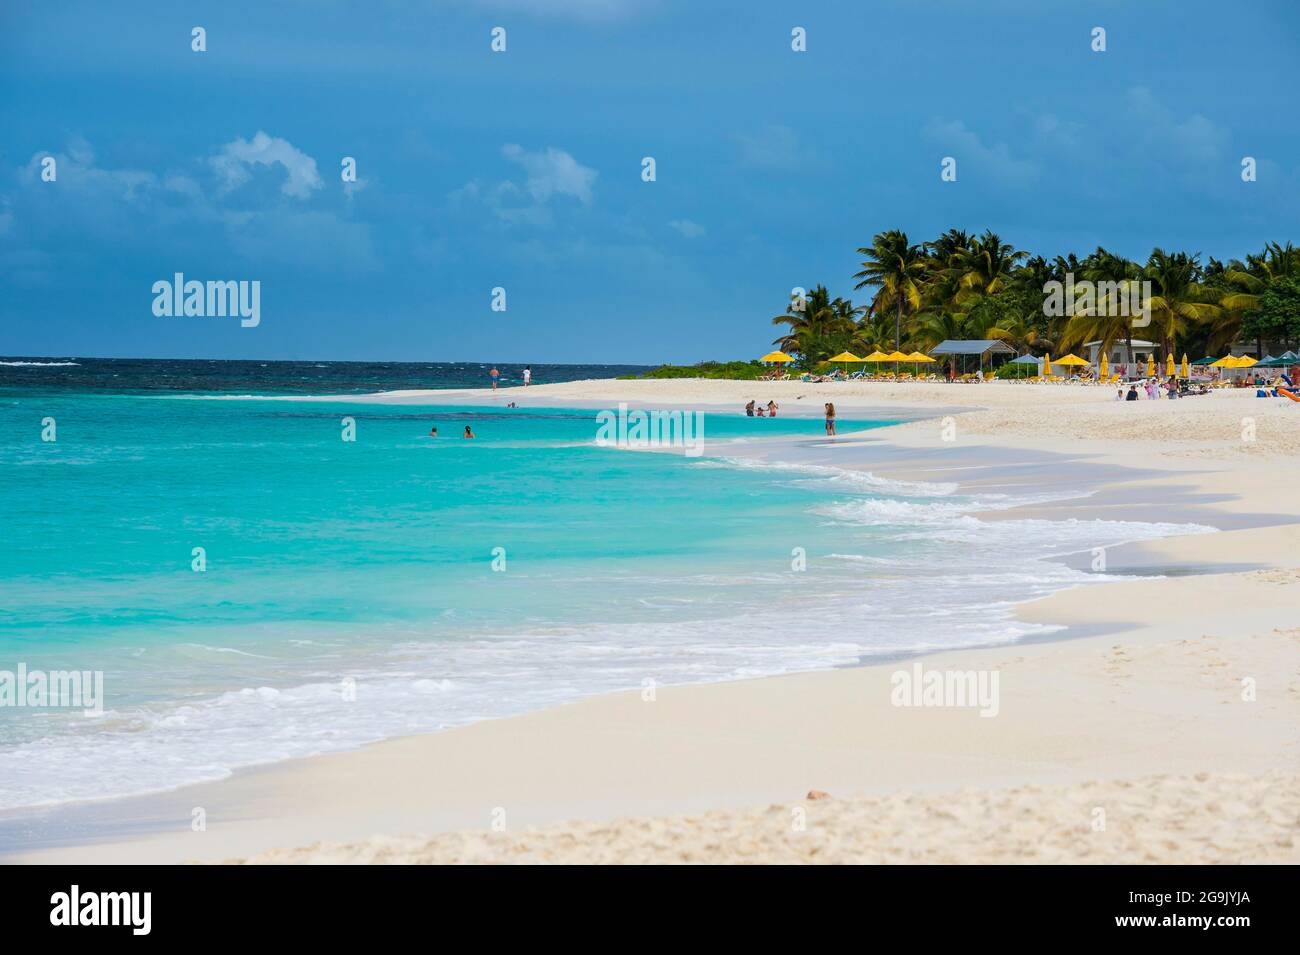 Plage de classe mondiale de Shoal Bay East, Anguilla, Caraïbes, territoire britannique d'outre-mer, Royaume-Uni Banque D'Images